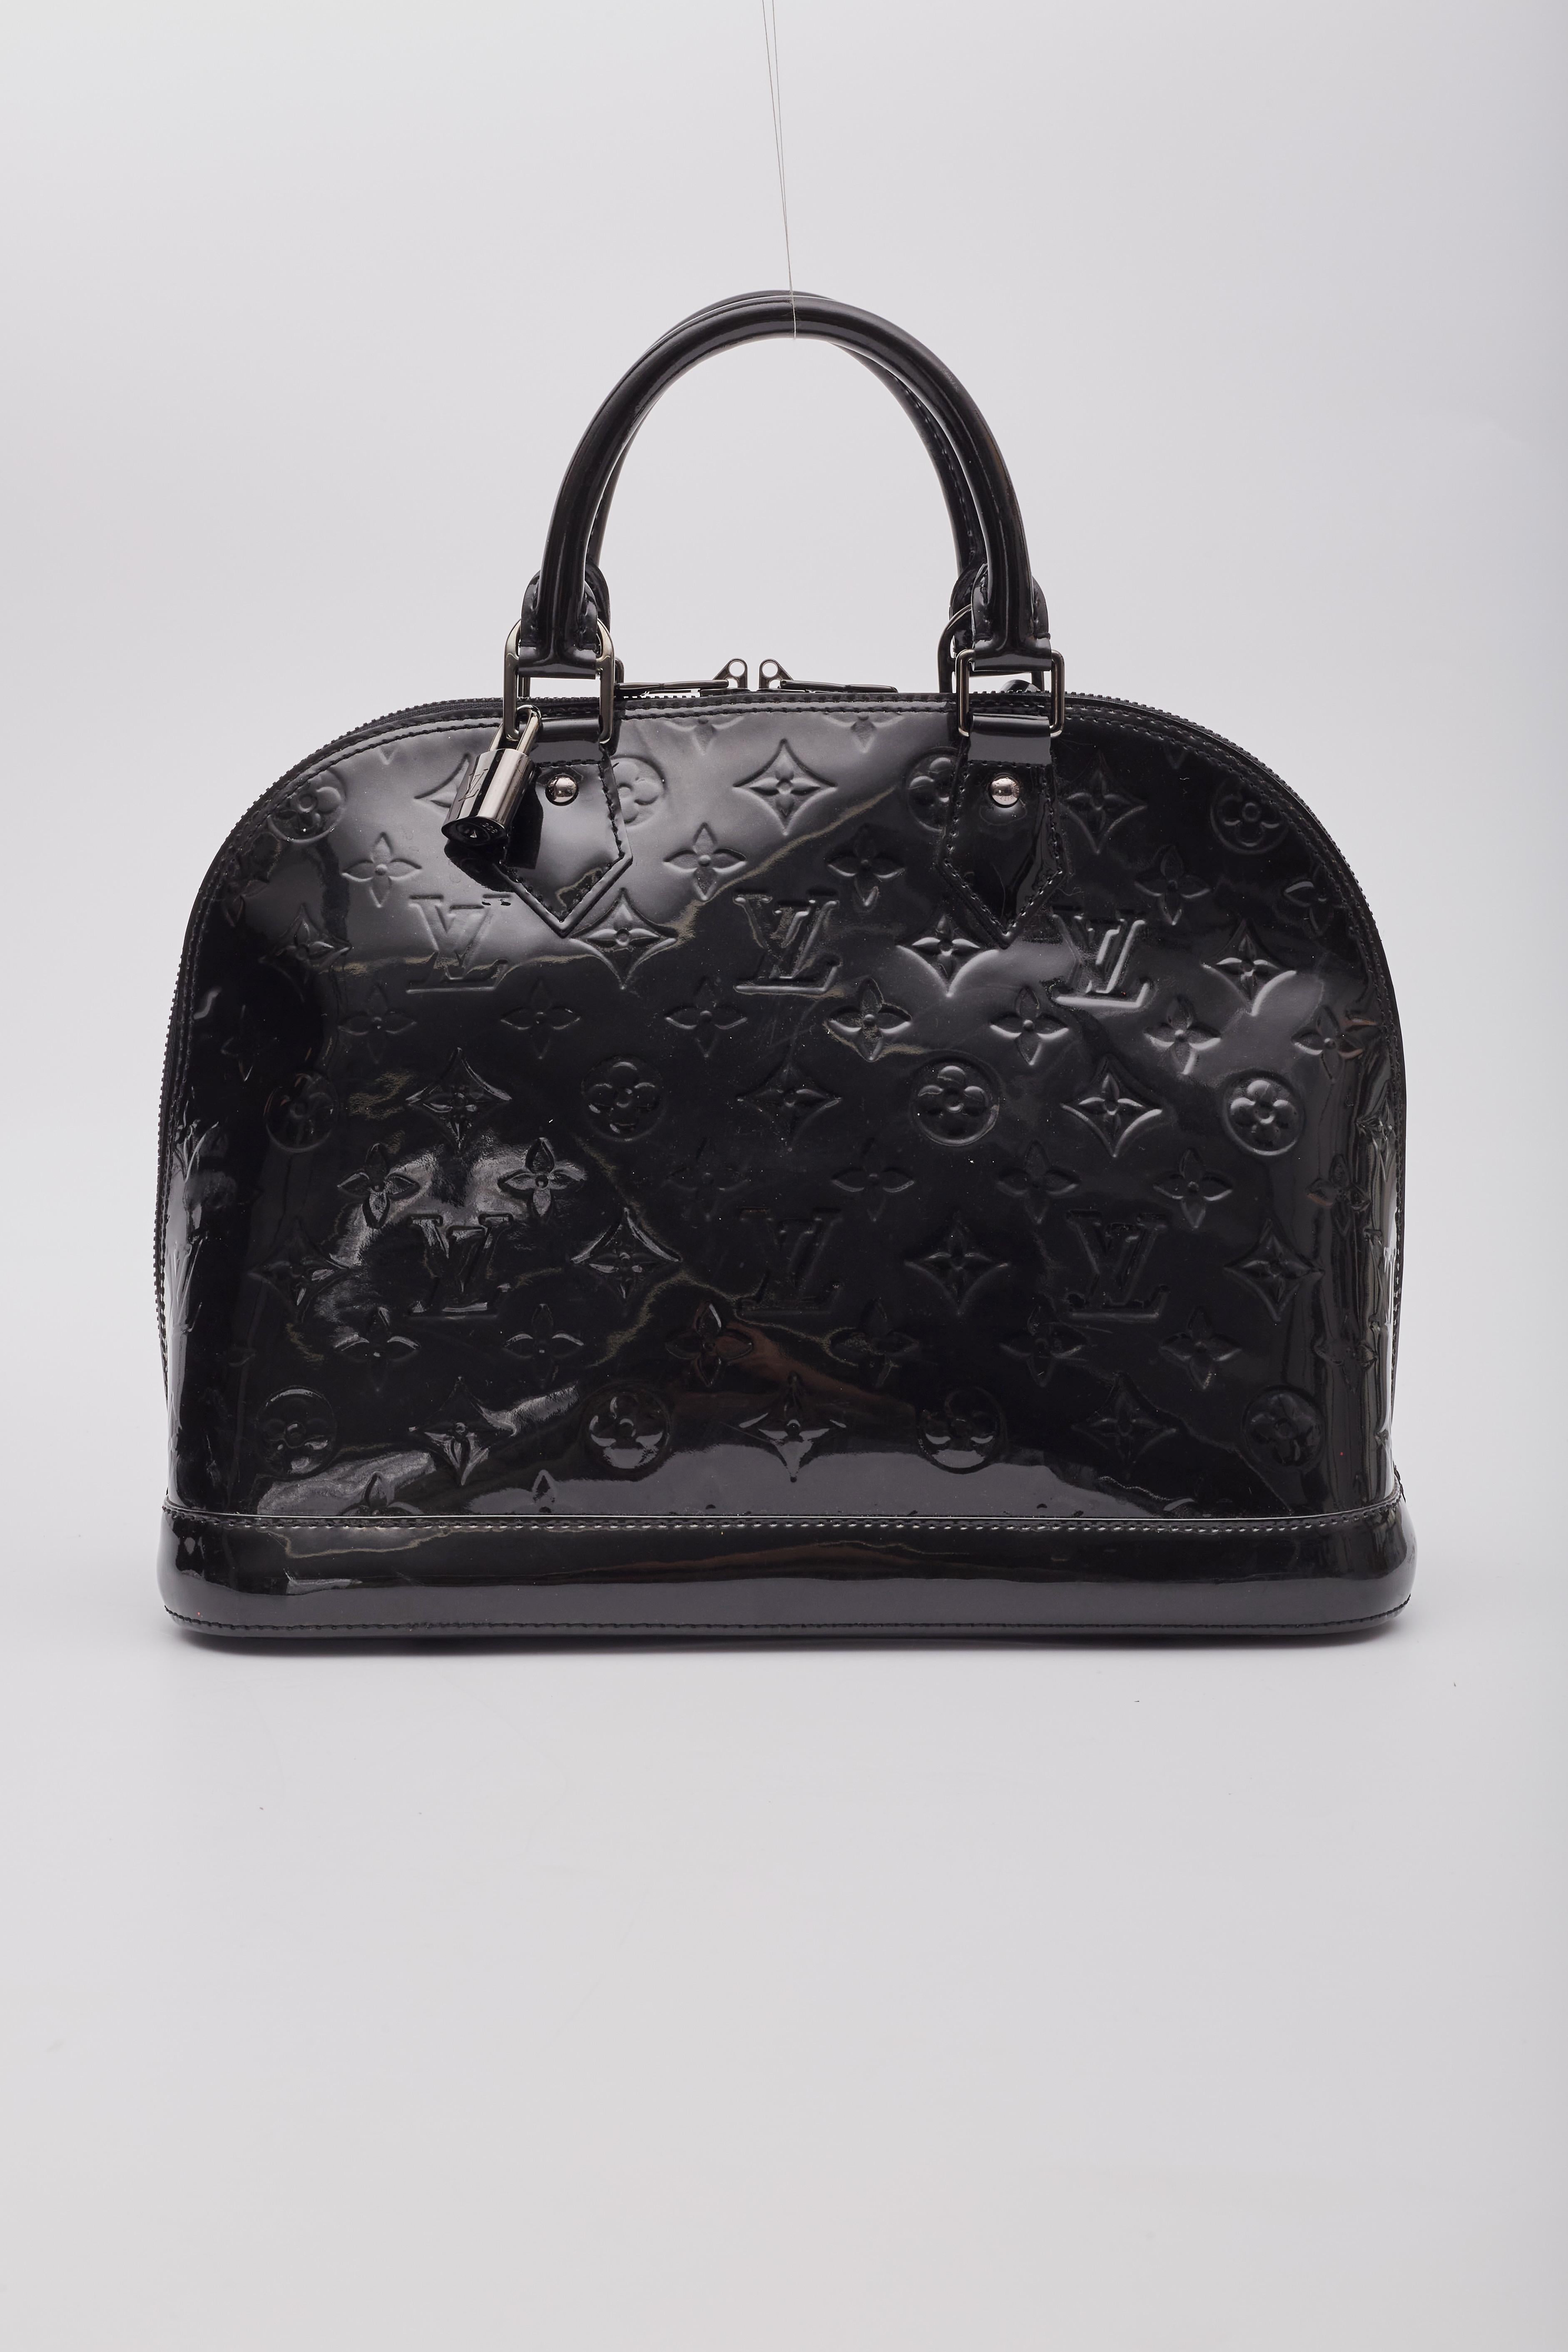 Women's Louis Vuitton Black Vernis Noir Magnetique Alma Pm Handbag For Sale